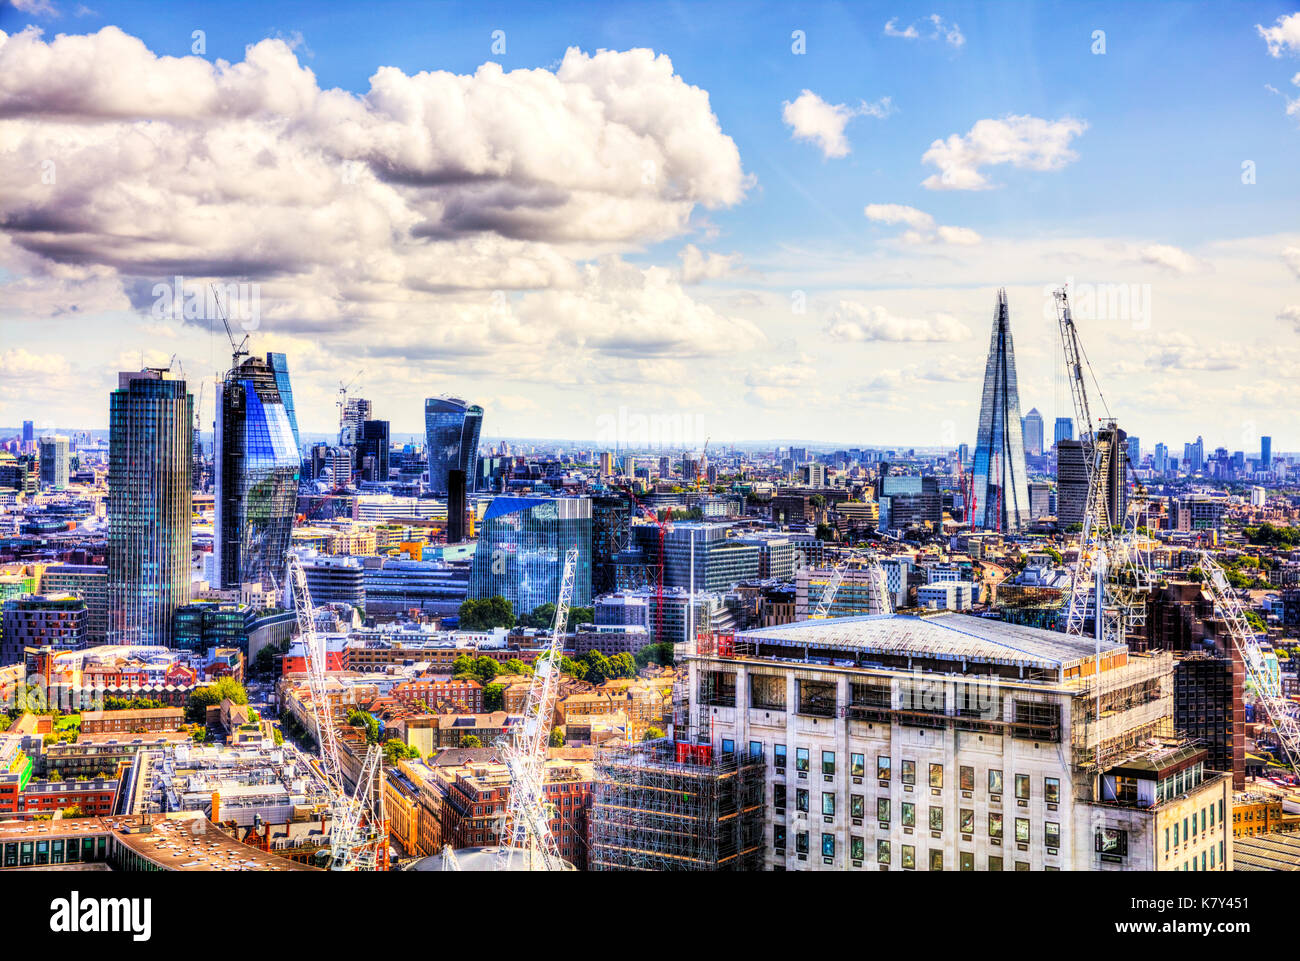 Ciudad de London Square Mile, shard, walkie-talkie, Natwest Tower edificios, construcción de edificios de Londres, Londres, Londres vista aérea, Londres Foto de stock